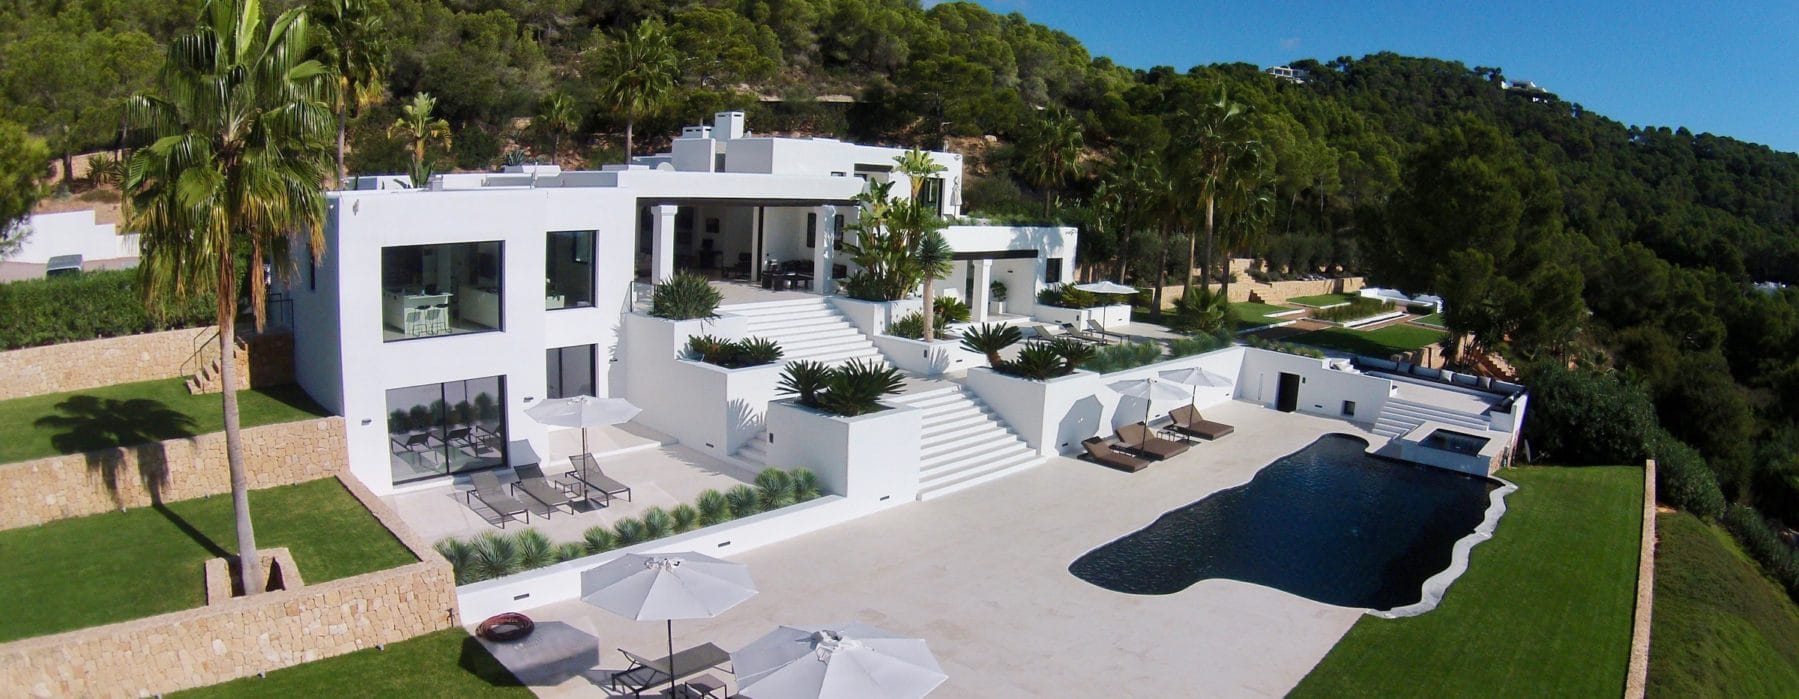 Simposio raya viuda Your Ibiza Villa and Holiday Homes Rental Booking Partner